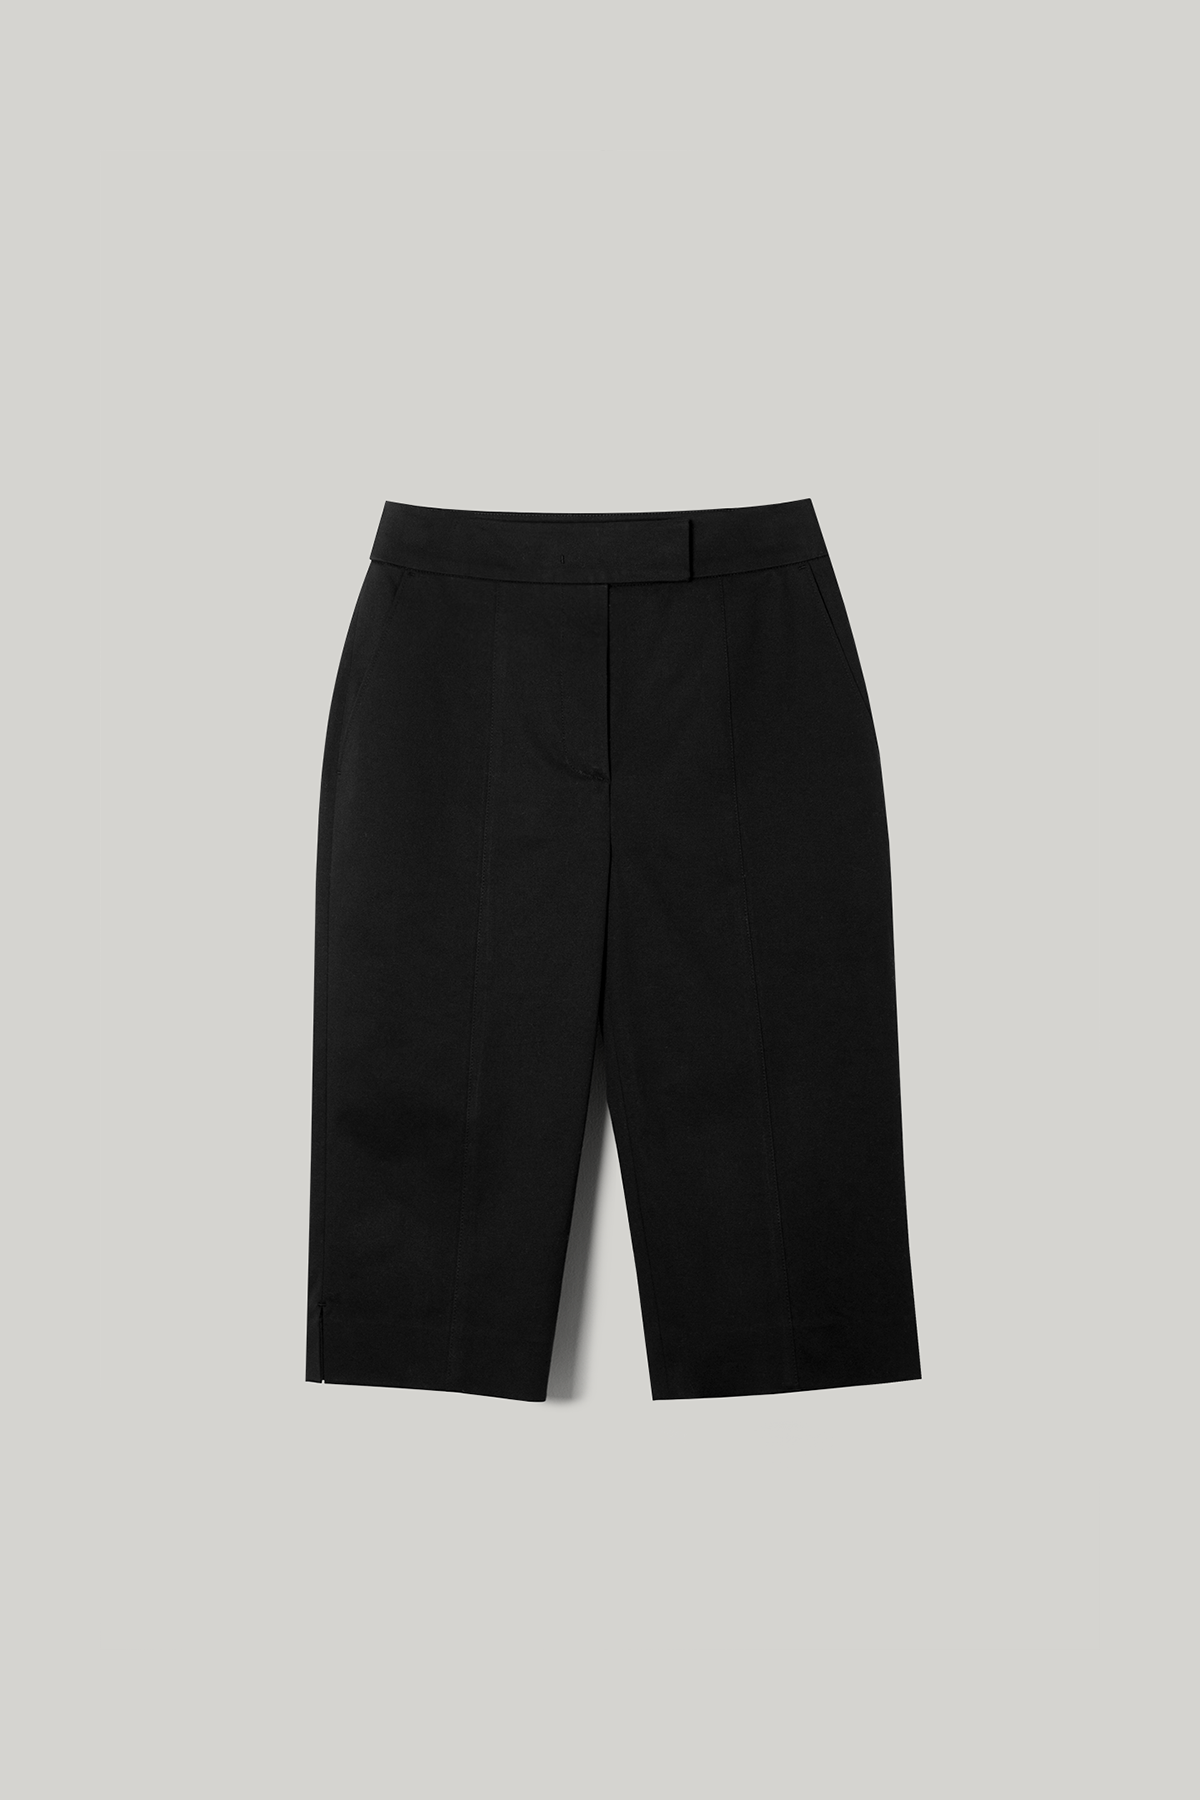 Dua Slit Bermuda Shorts (Black)